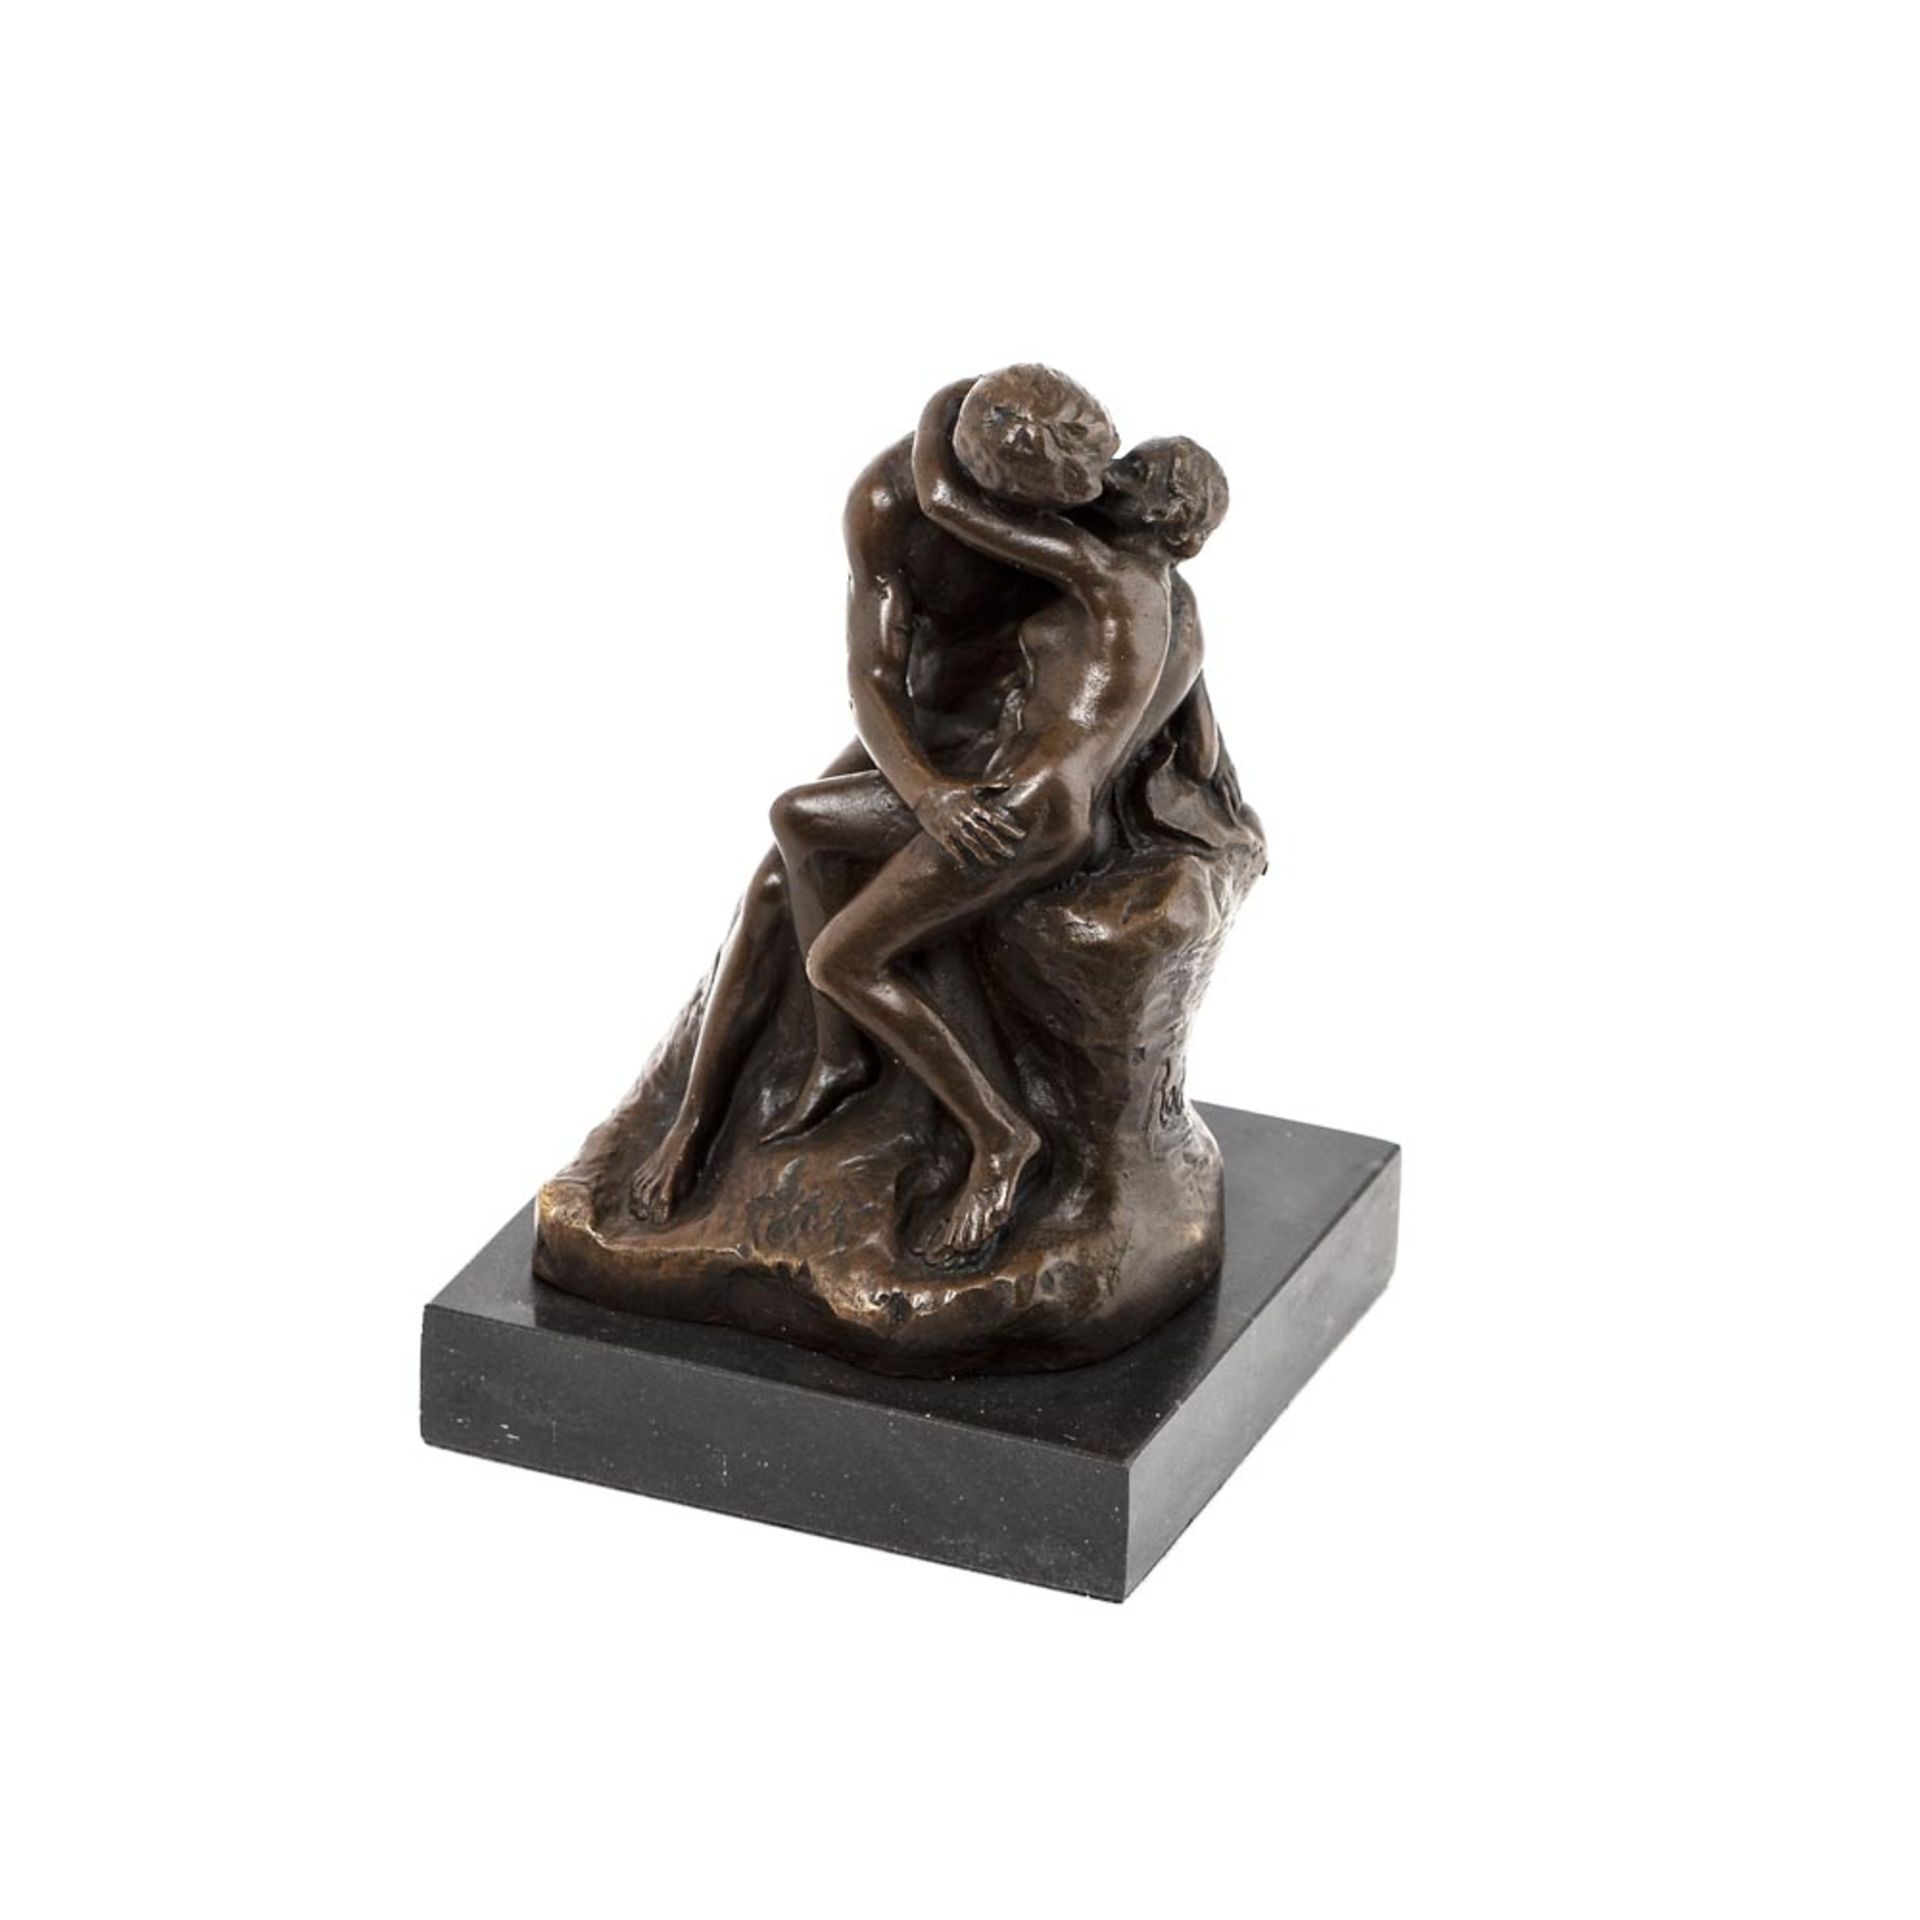 Escuela europea, fles. del s.XX. El beso. Escultura en bronce patinado según modelo de Auguste